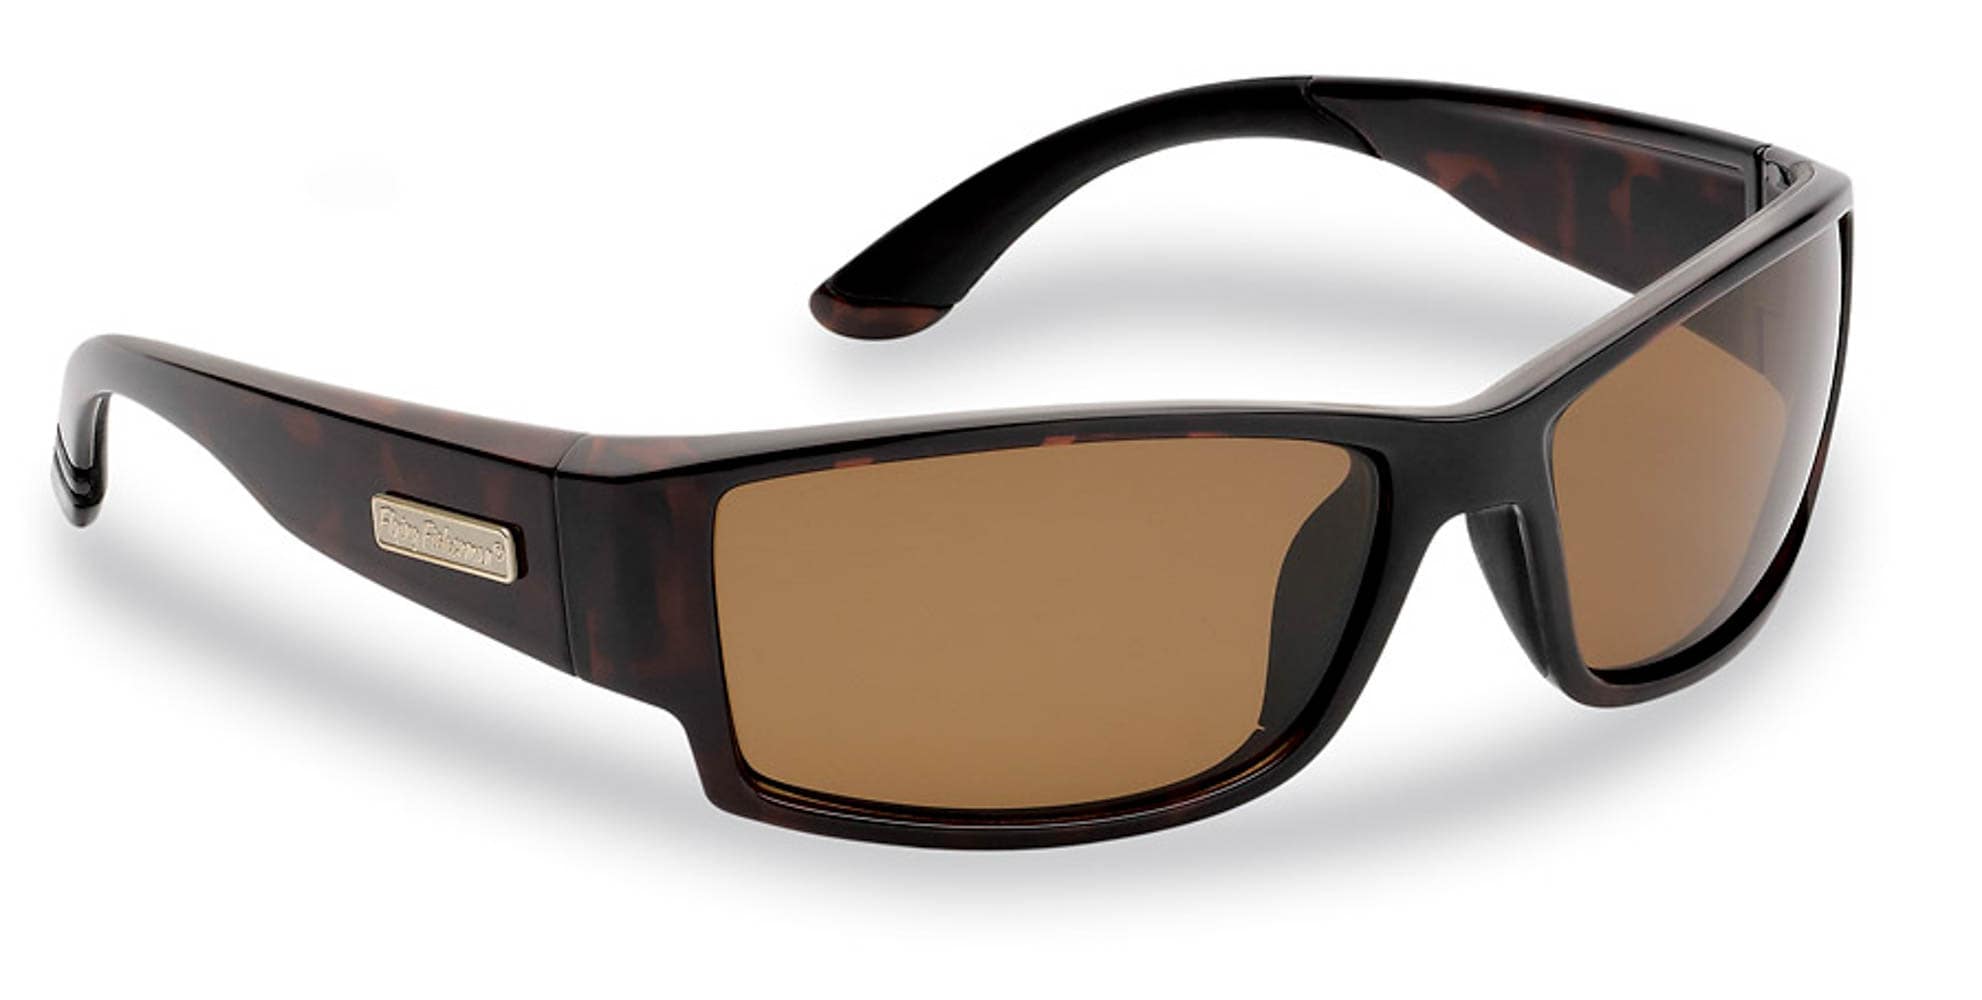 Flying Fisherman Adult Unisex Polarized Dark Tortoise Frame, Amber Lens  Plastic Sunglasses in the Sunglasses & Glasses department at